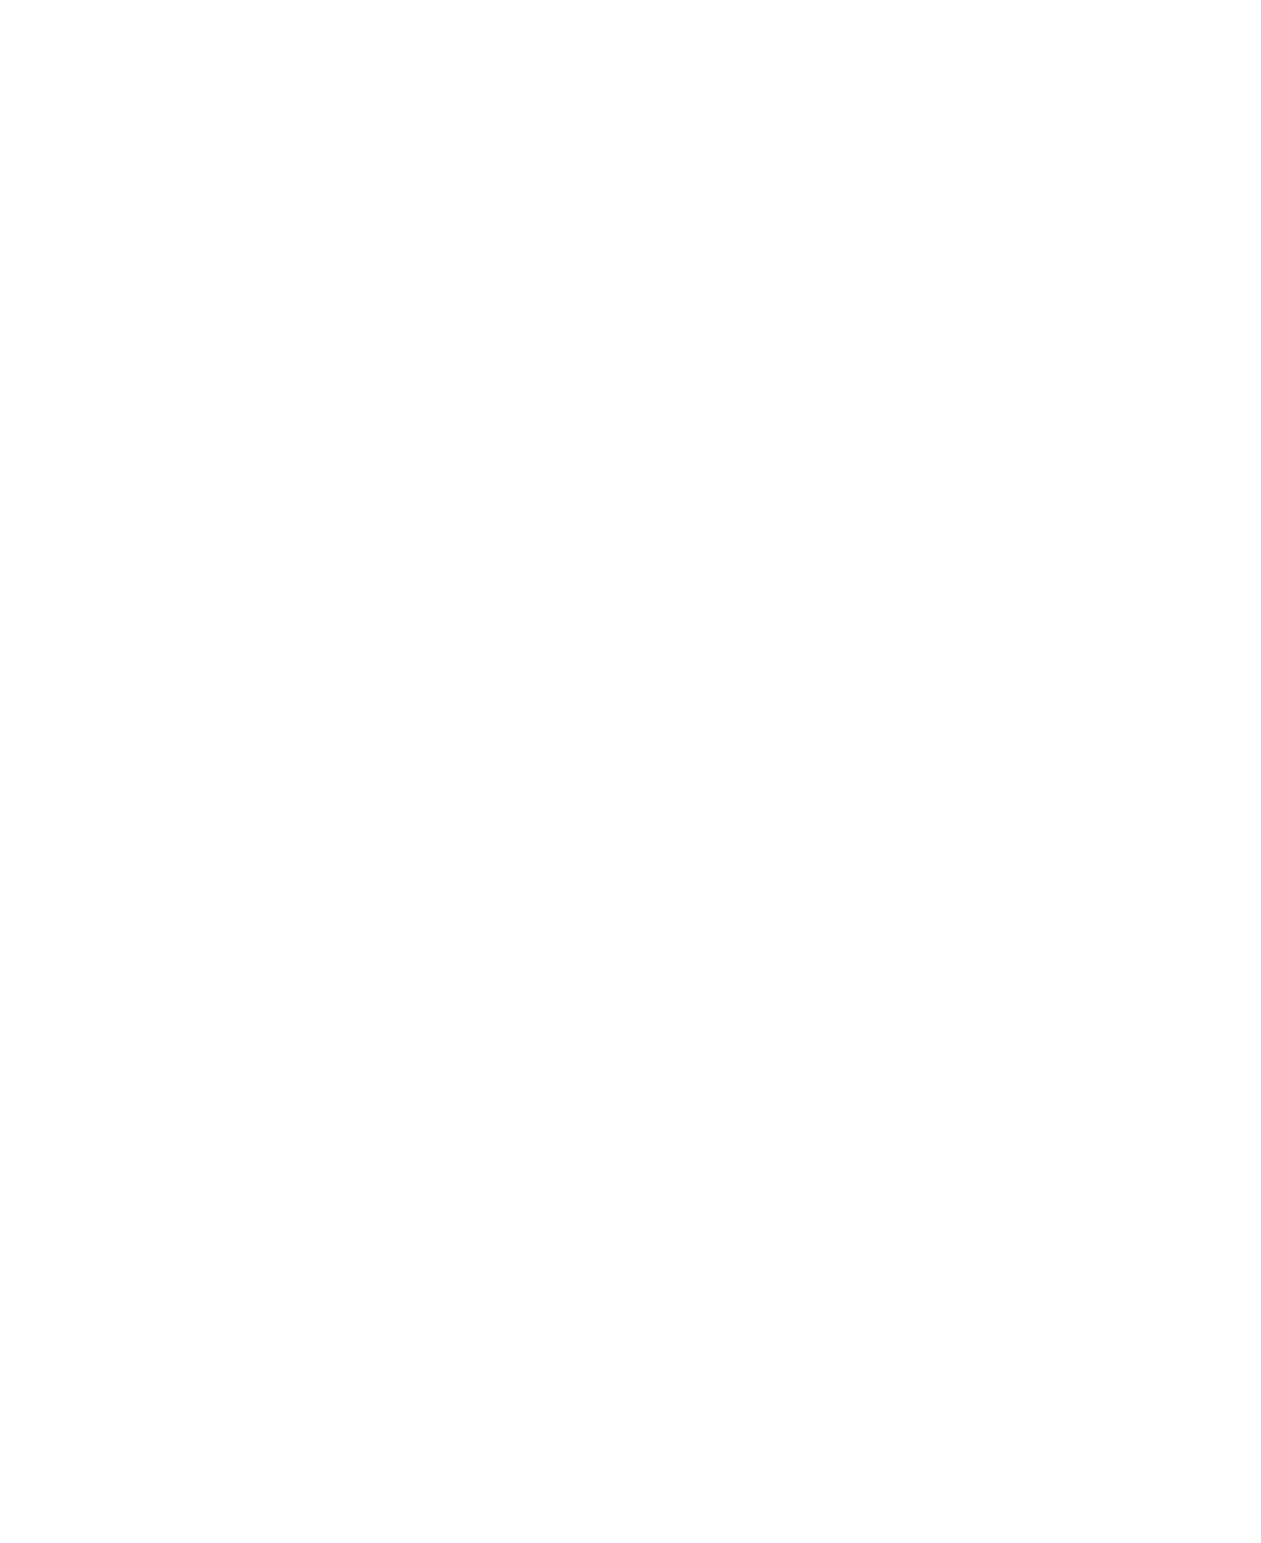 Synlait Milk logo for dark backgrounds (transparent PNG)